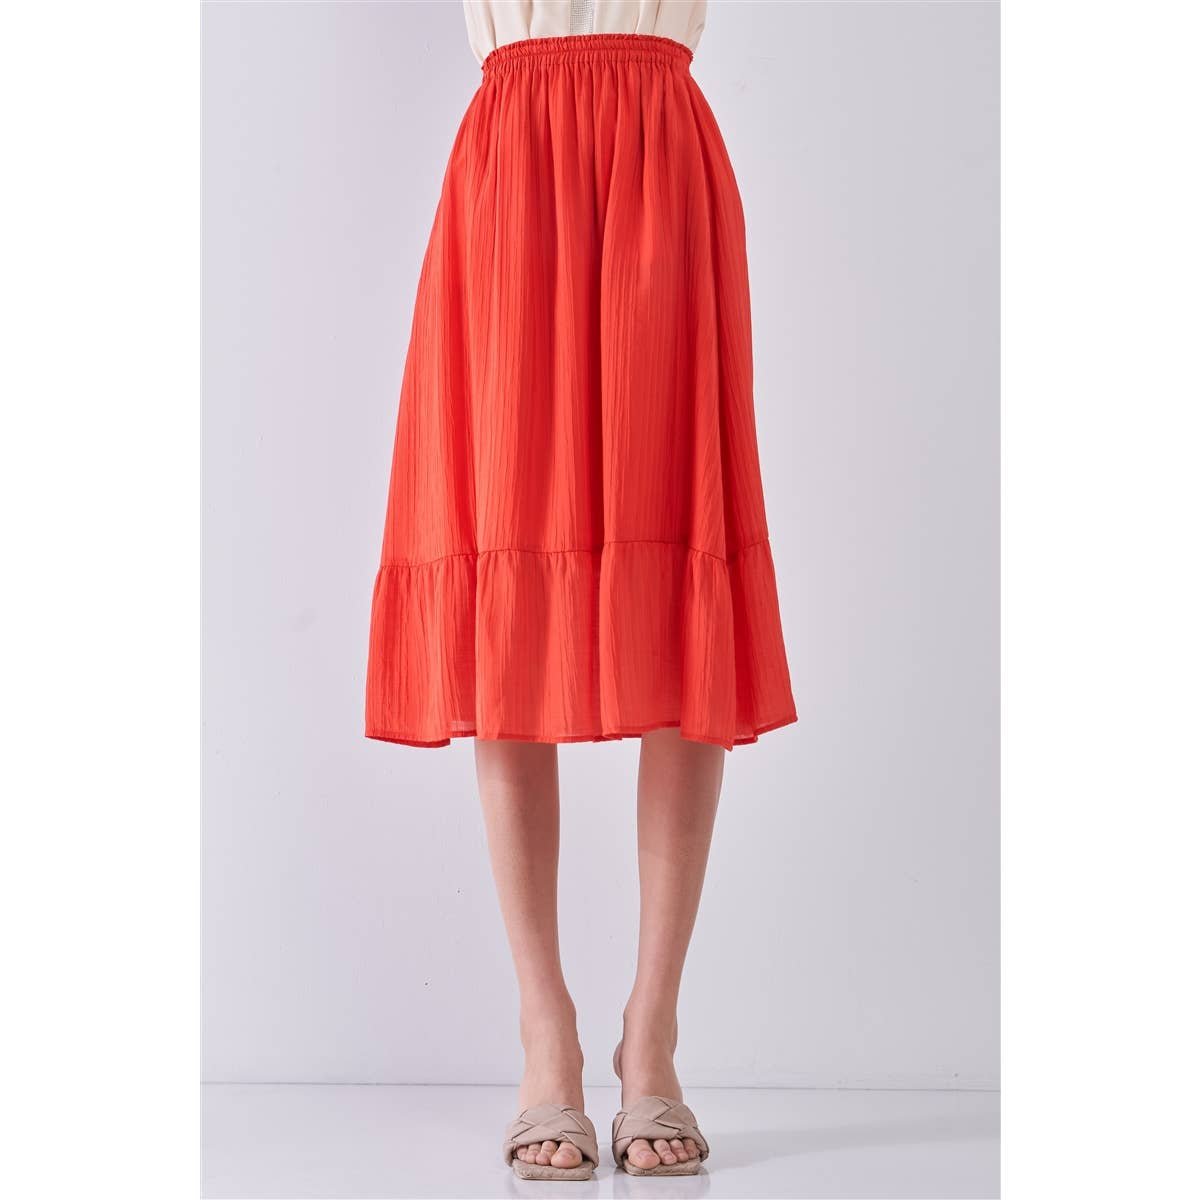 reasonable price Red High Waist Pleated Midi Skirt M lt